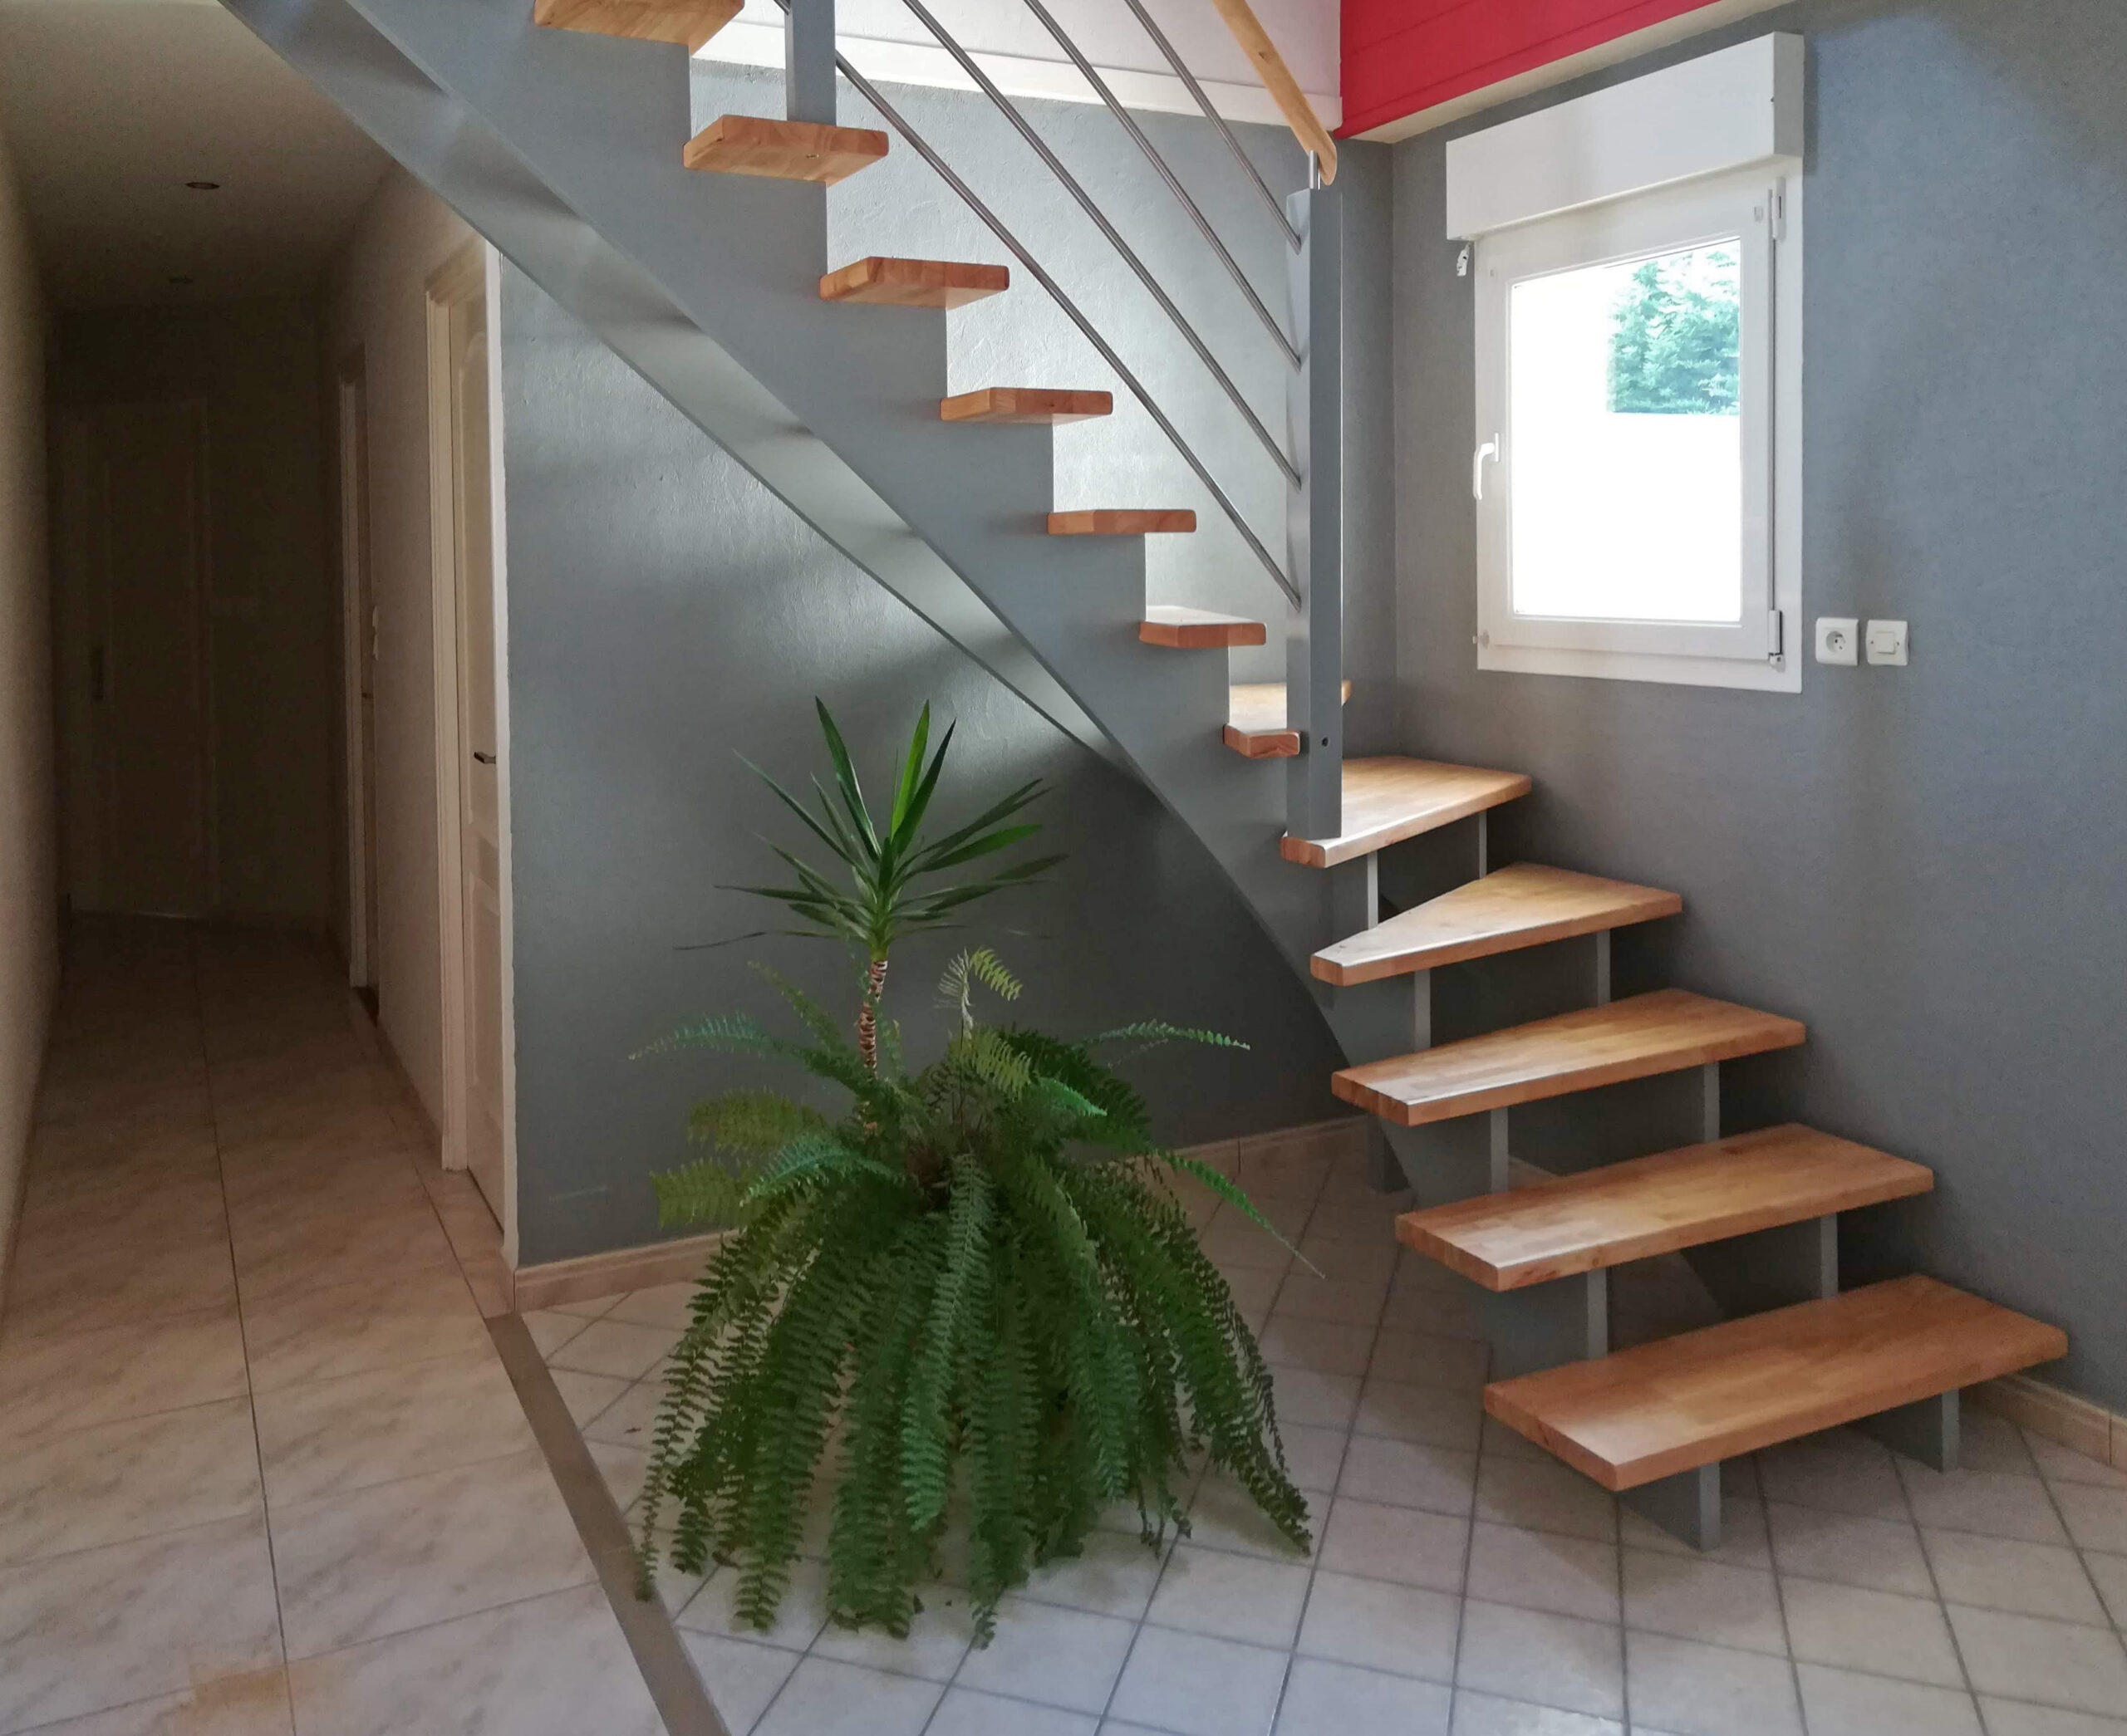 Escalier double crémaillères centrales en bois avec crémaillères teintées gris et marches vernis mat